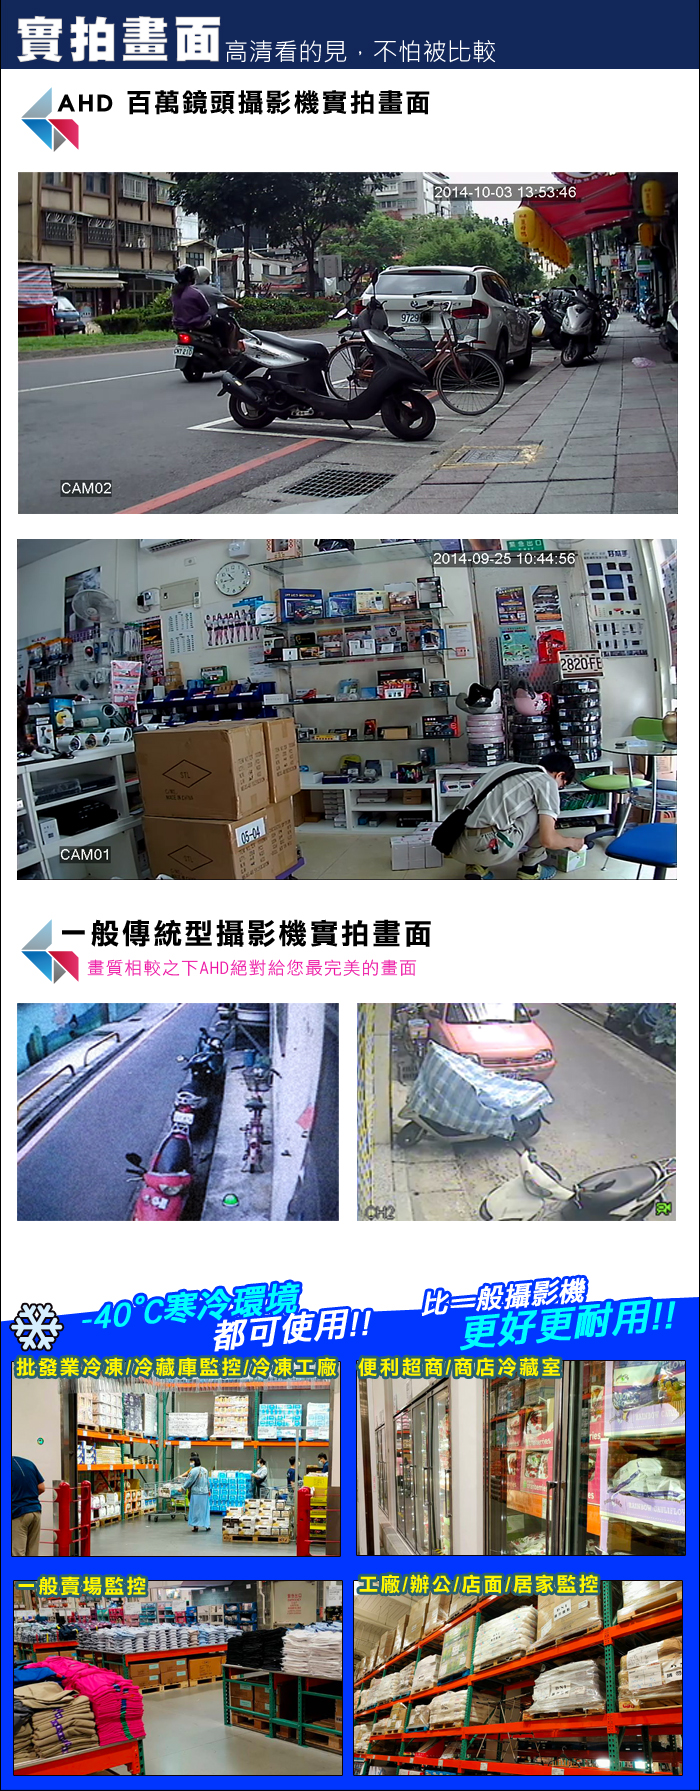 監視器攝影機 KINGNET 台灣監控大廠 AHD1080P 高畫質雙影像輸出 LILIN 紅外線夜視